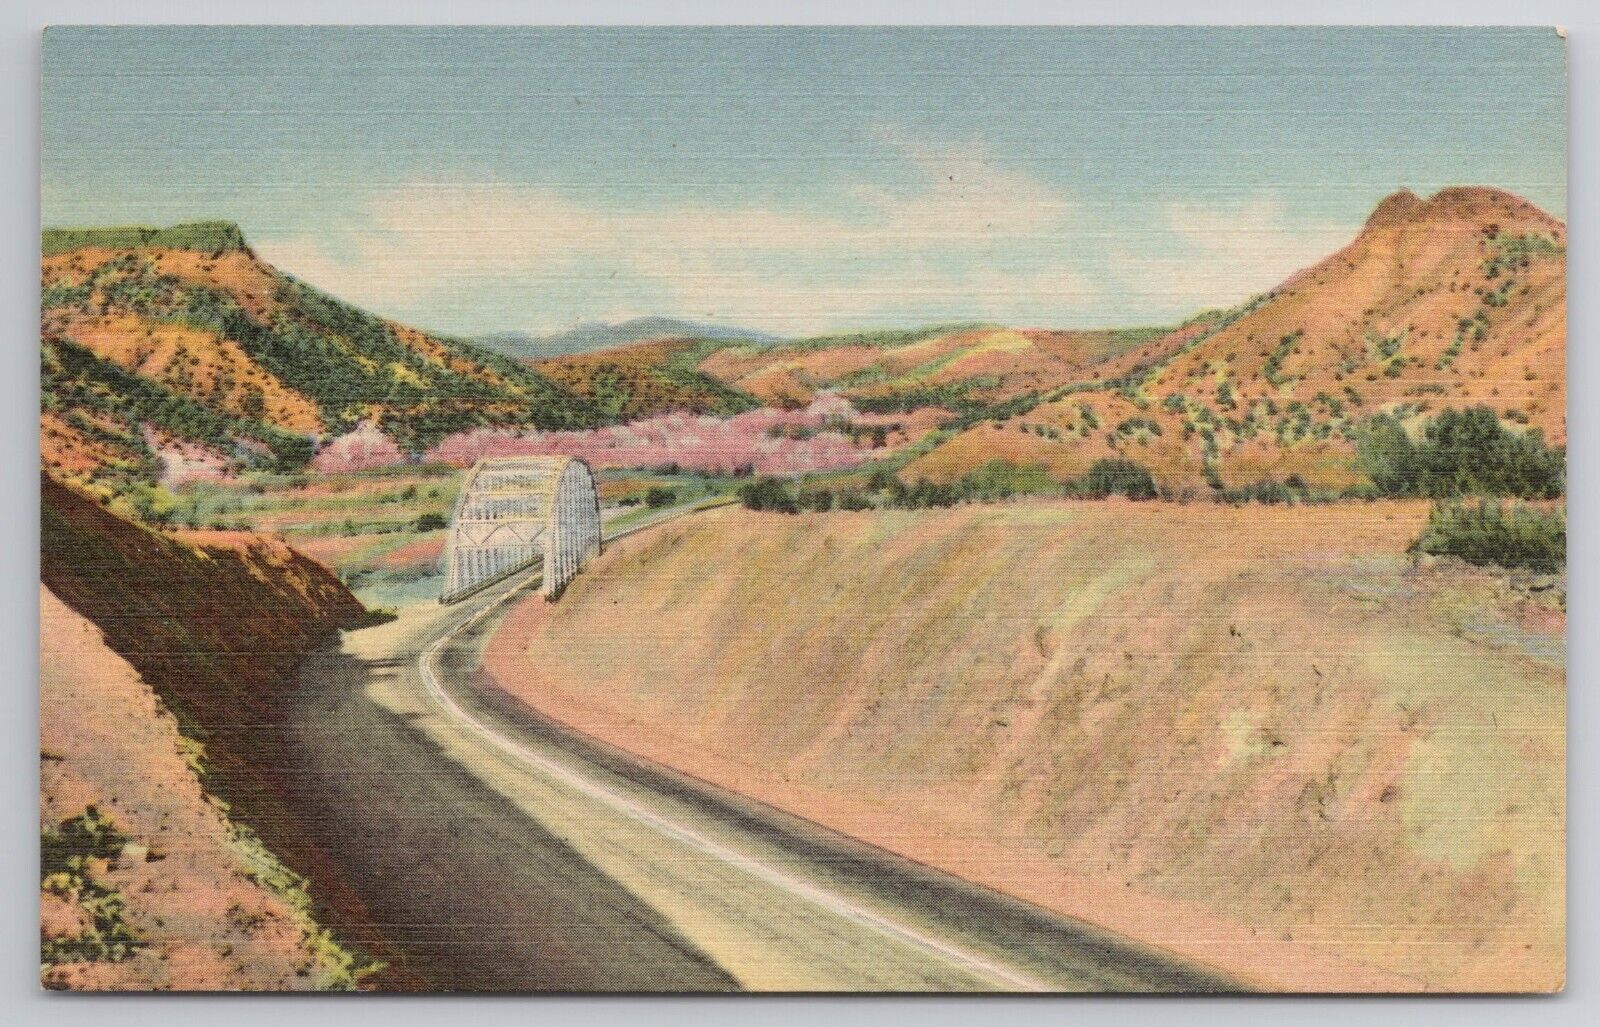 1948 Postcard Rio Grande River Bridge Santa Fe Los Alamos Highway New Mexico